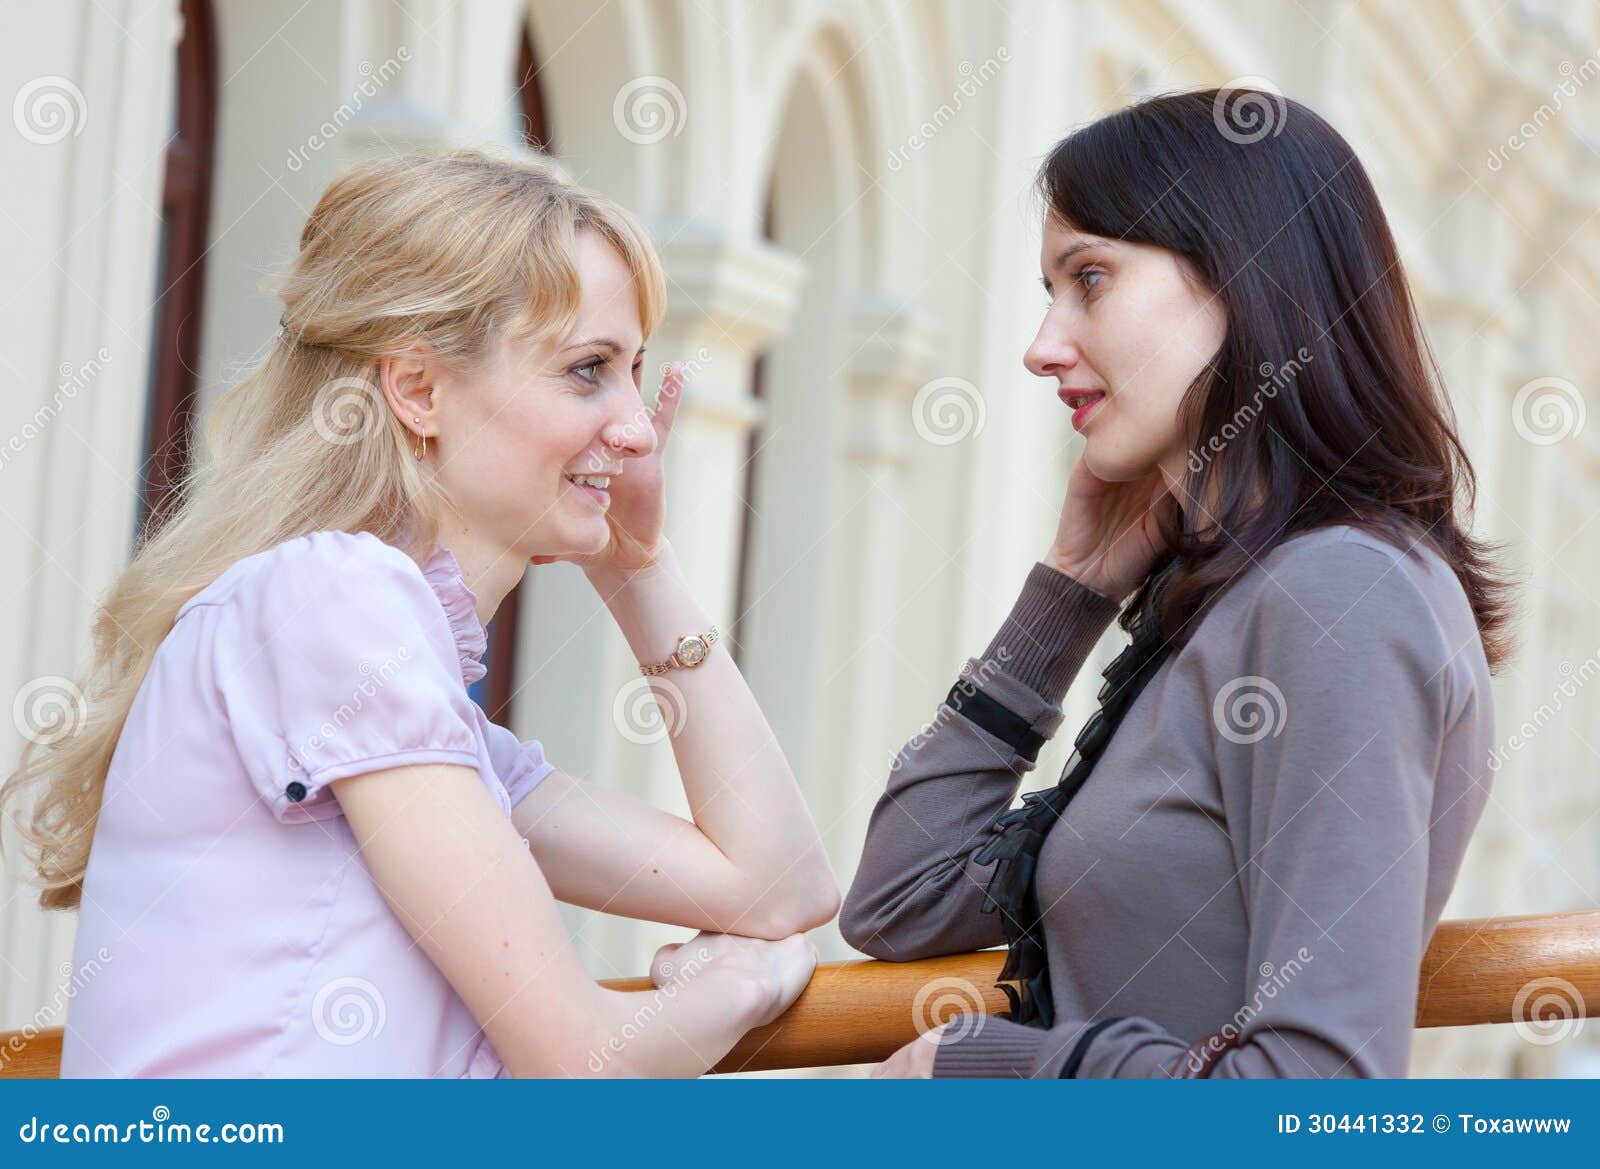 Разговор 2 лесбиянок. Разговор двух женщин. Две женщины Сток фото. Фото как разговаривают 2 женщины. Женщина рассматривает фотографии фото.